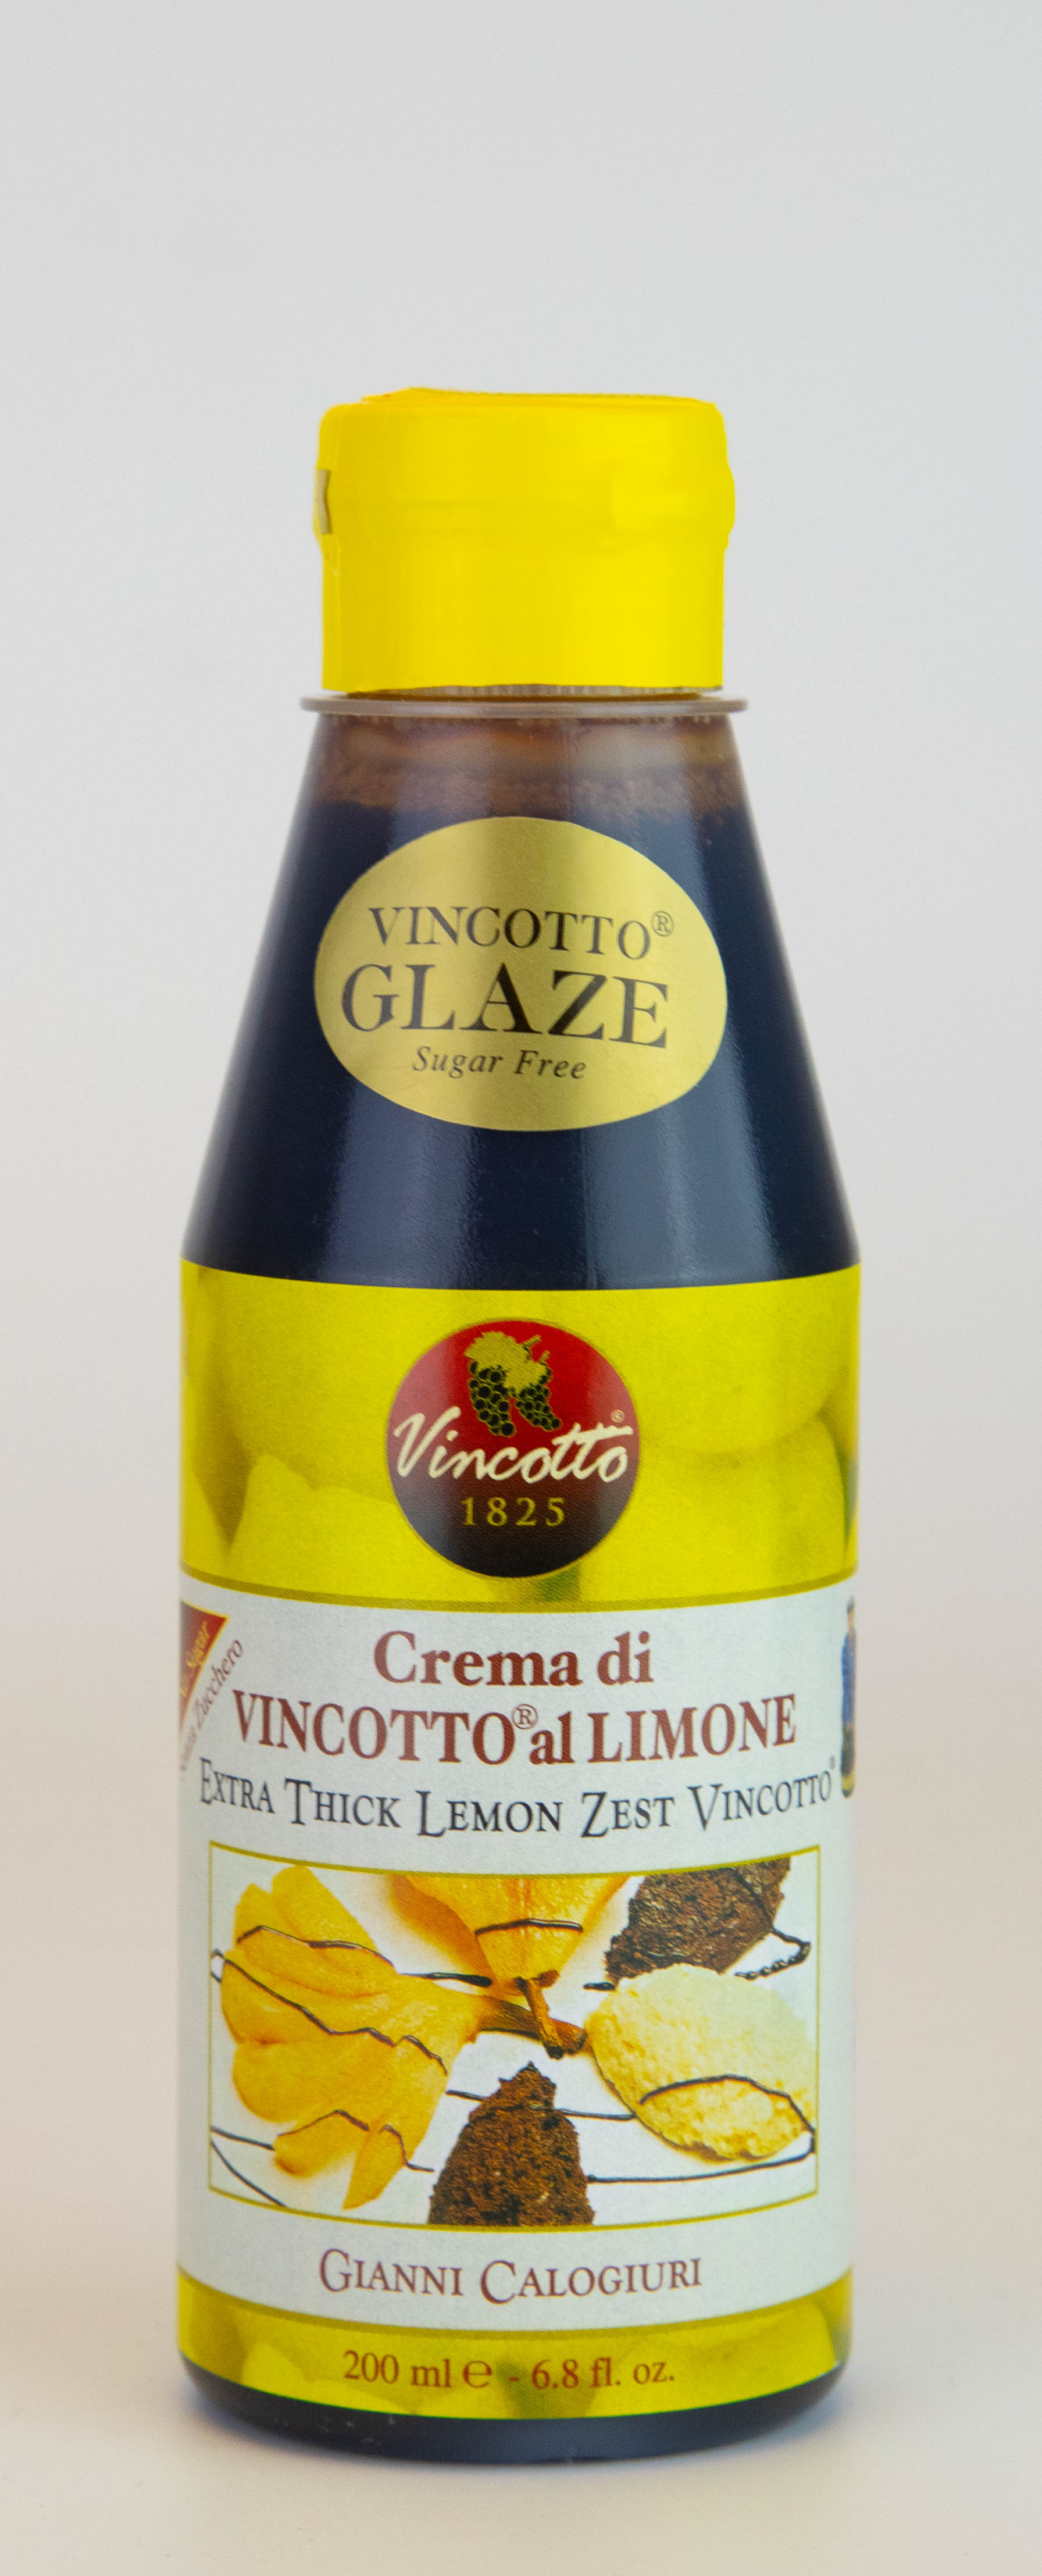 Crema di Vincotto Limone bottiglia da 200 ml